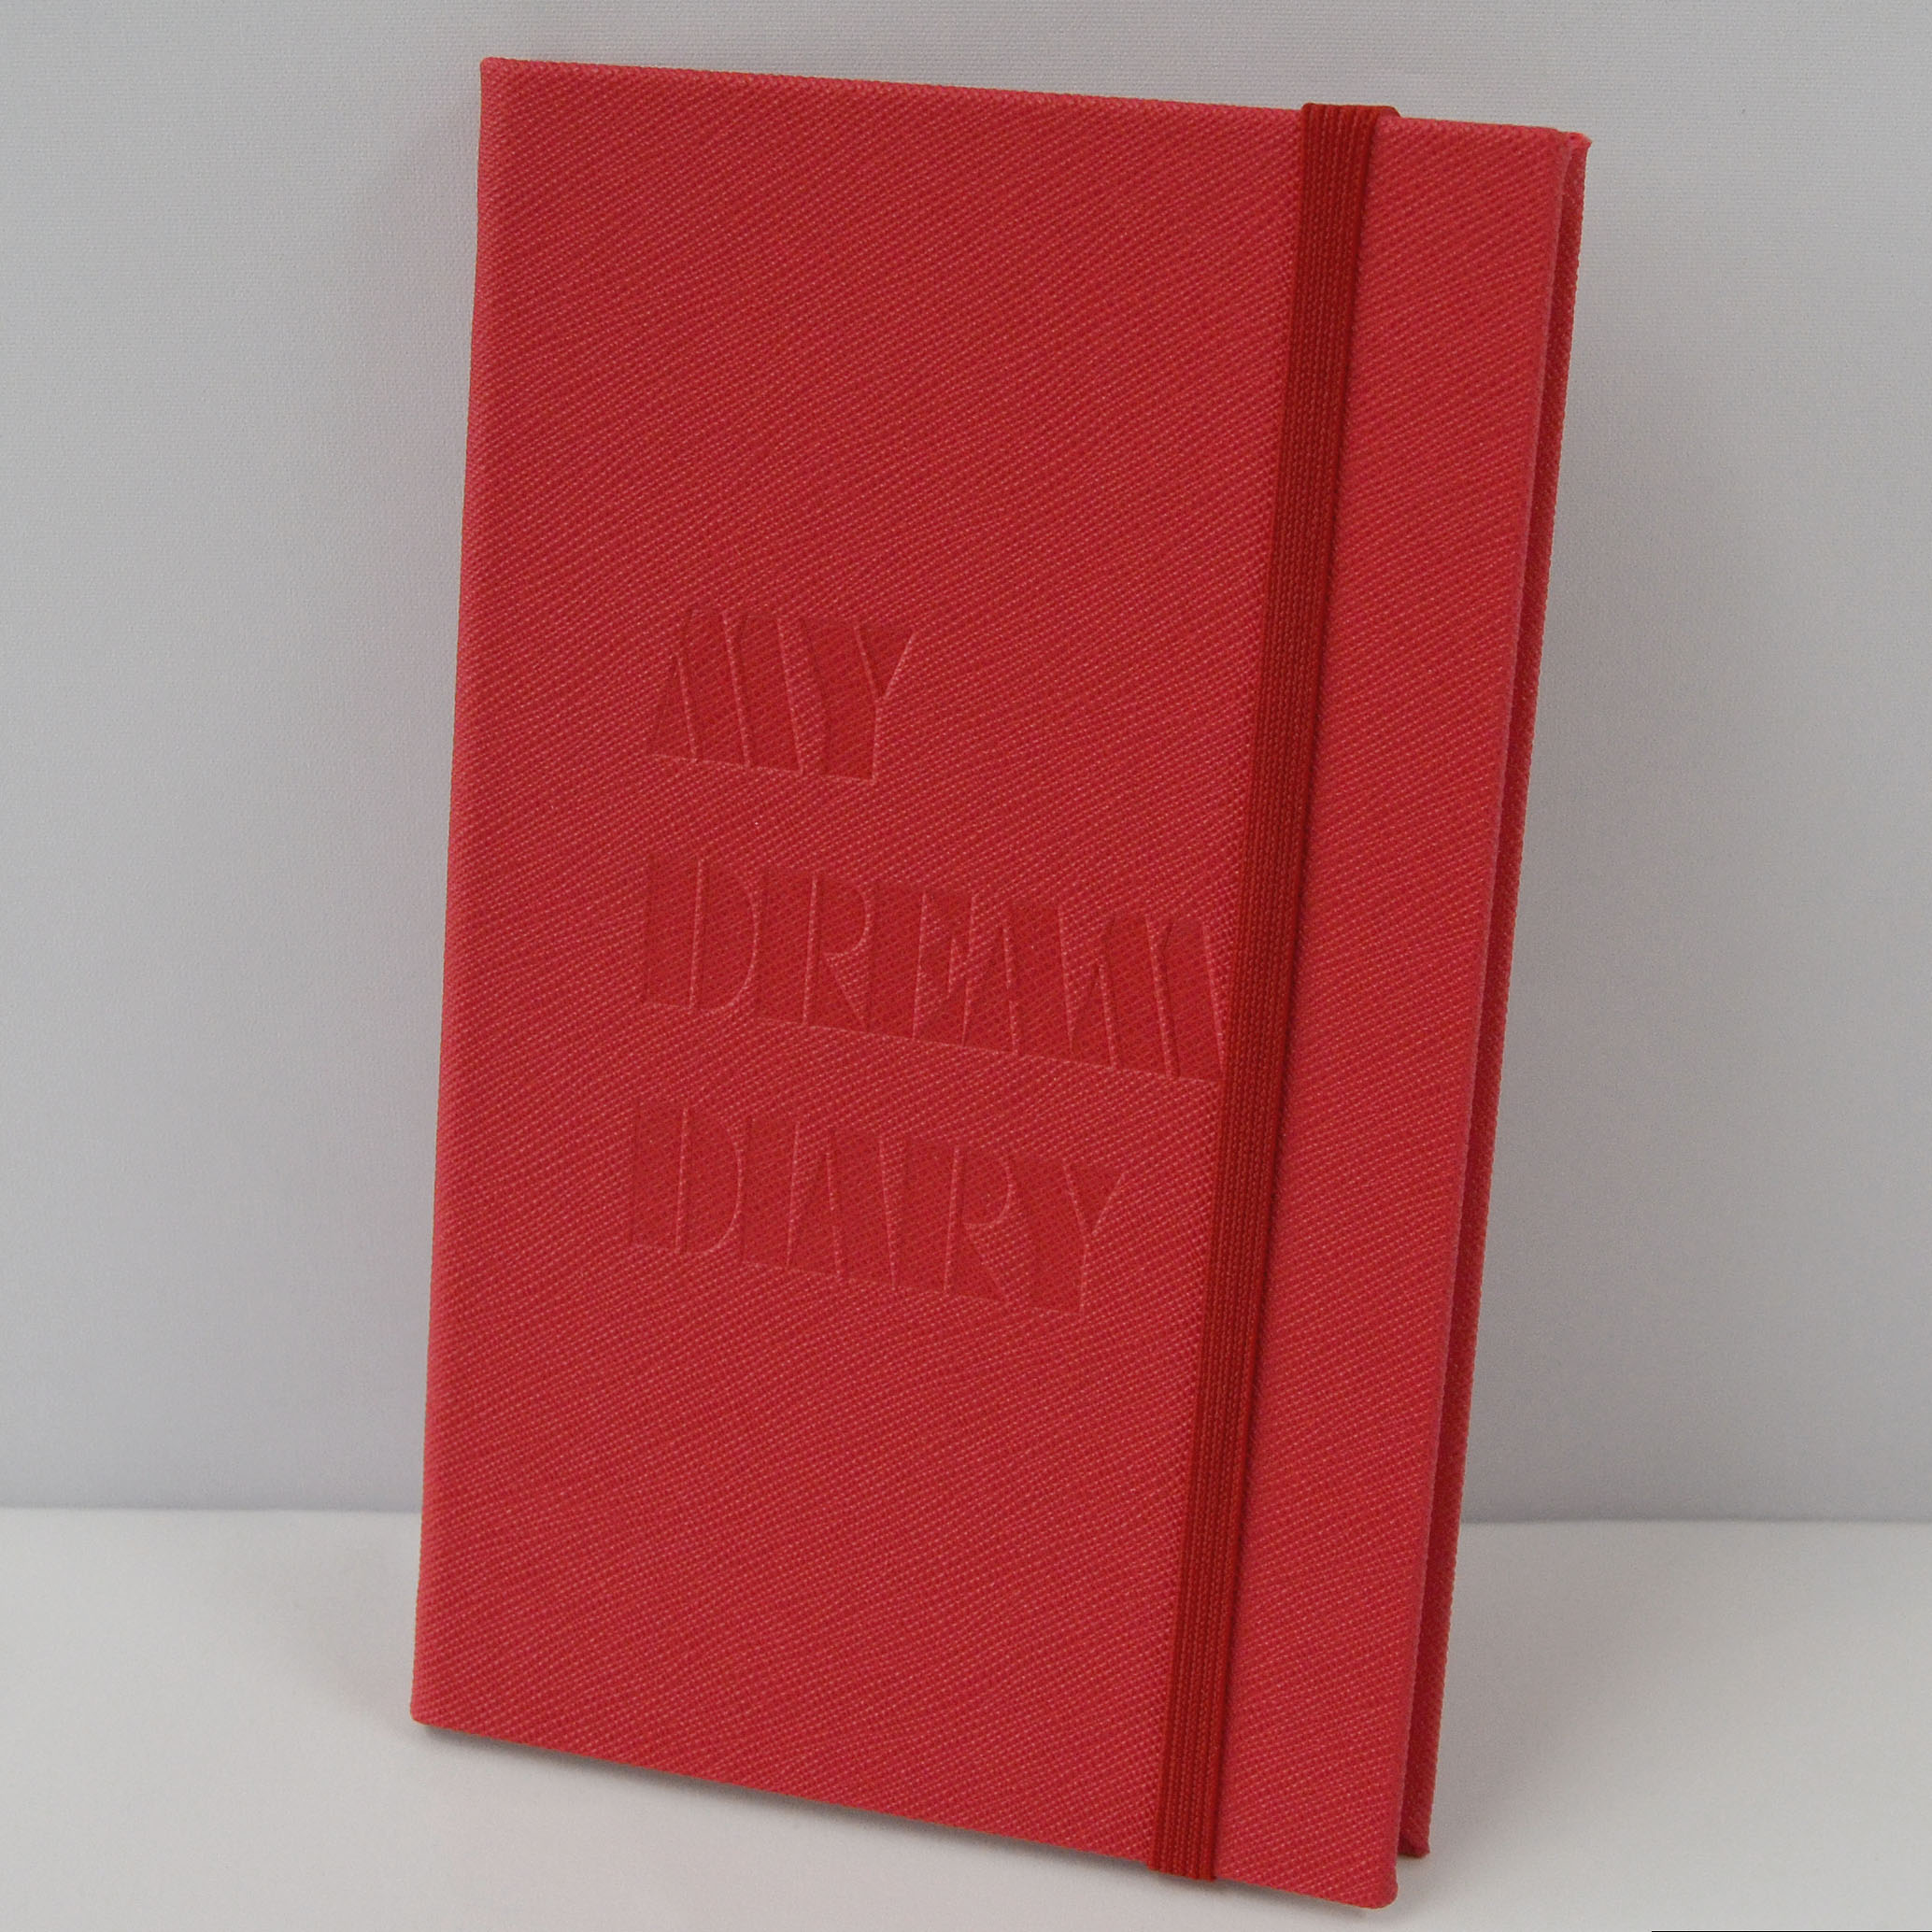 ø/Ʈ ø/Ʈ ø/Ʈ() My Dream Diary() ø ǰ 